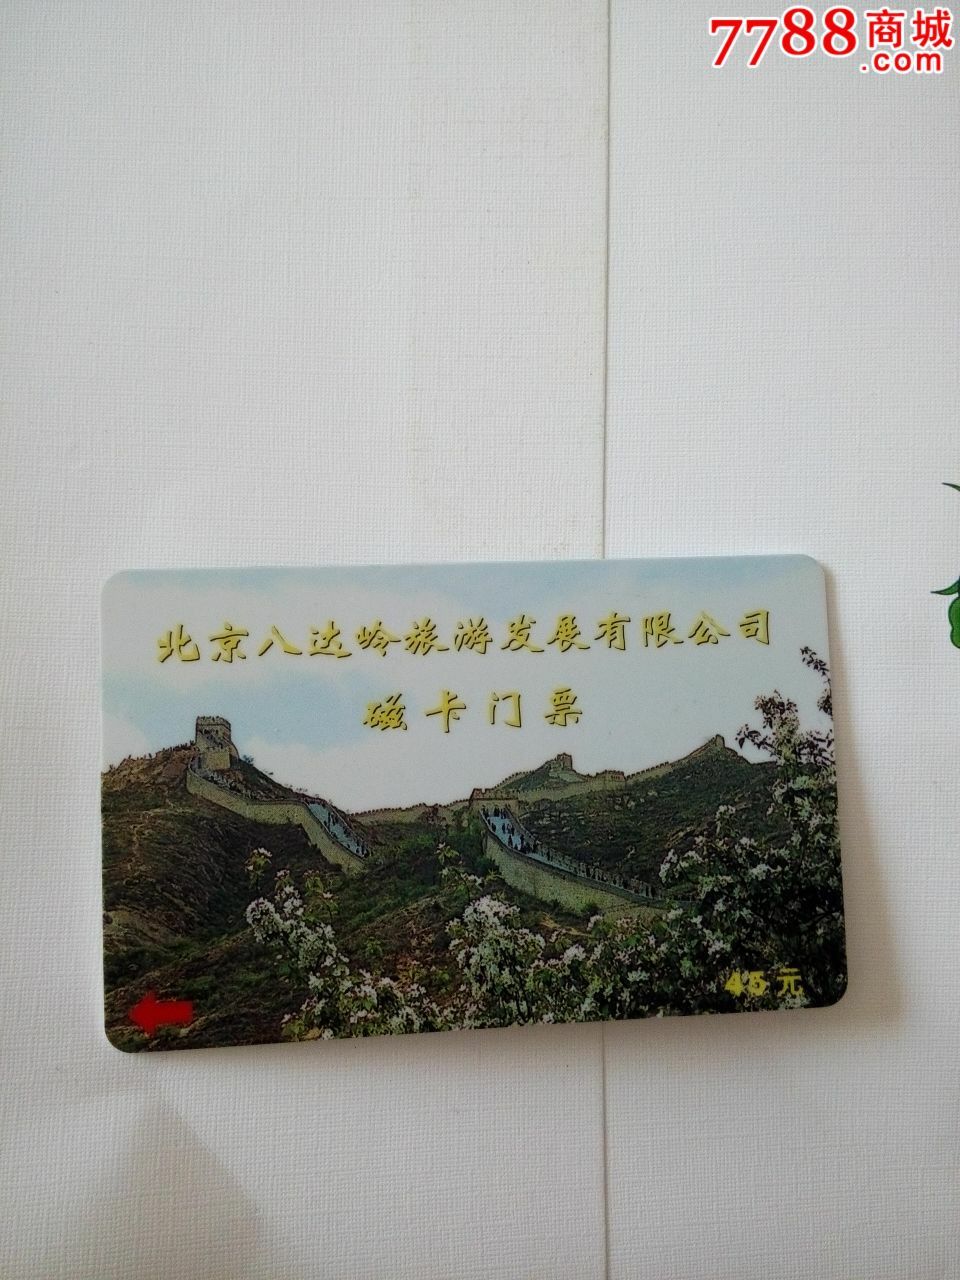 北京八达岭磁卡门票-价格:5元-se29488015-门